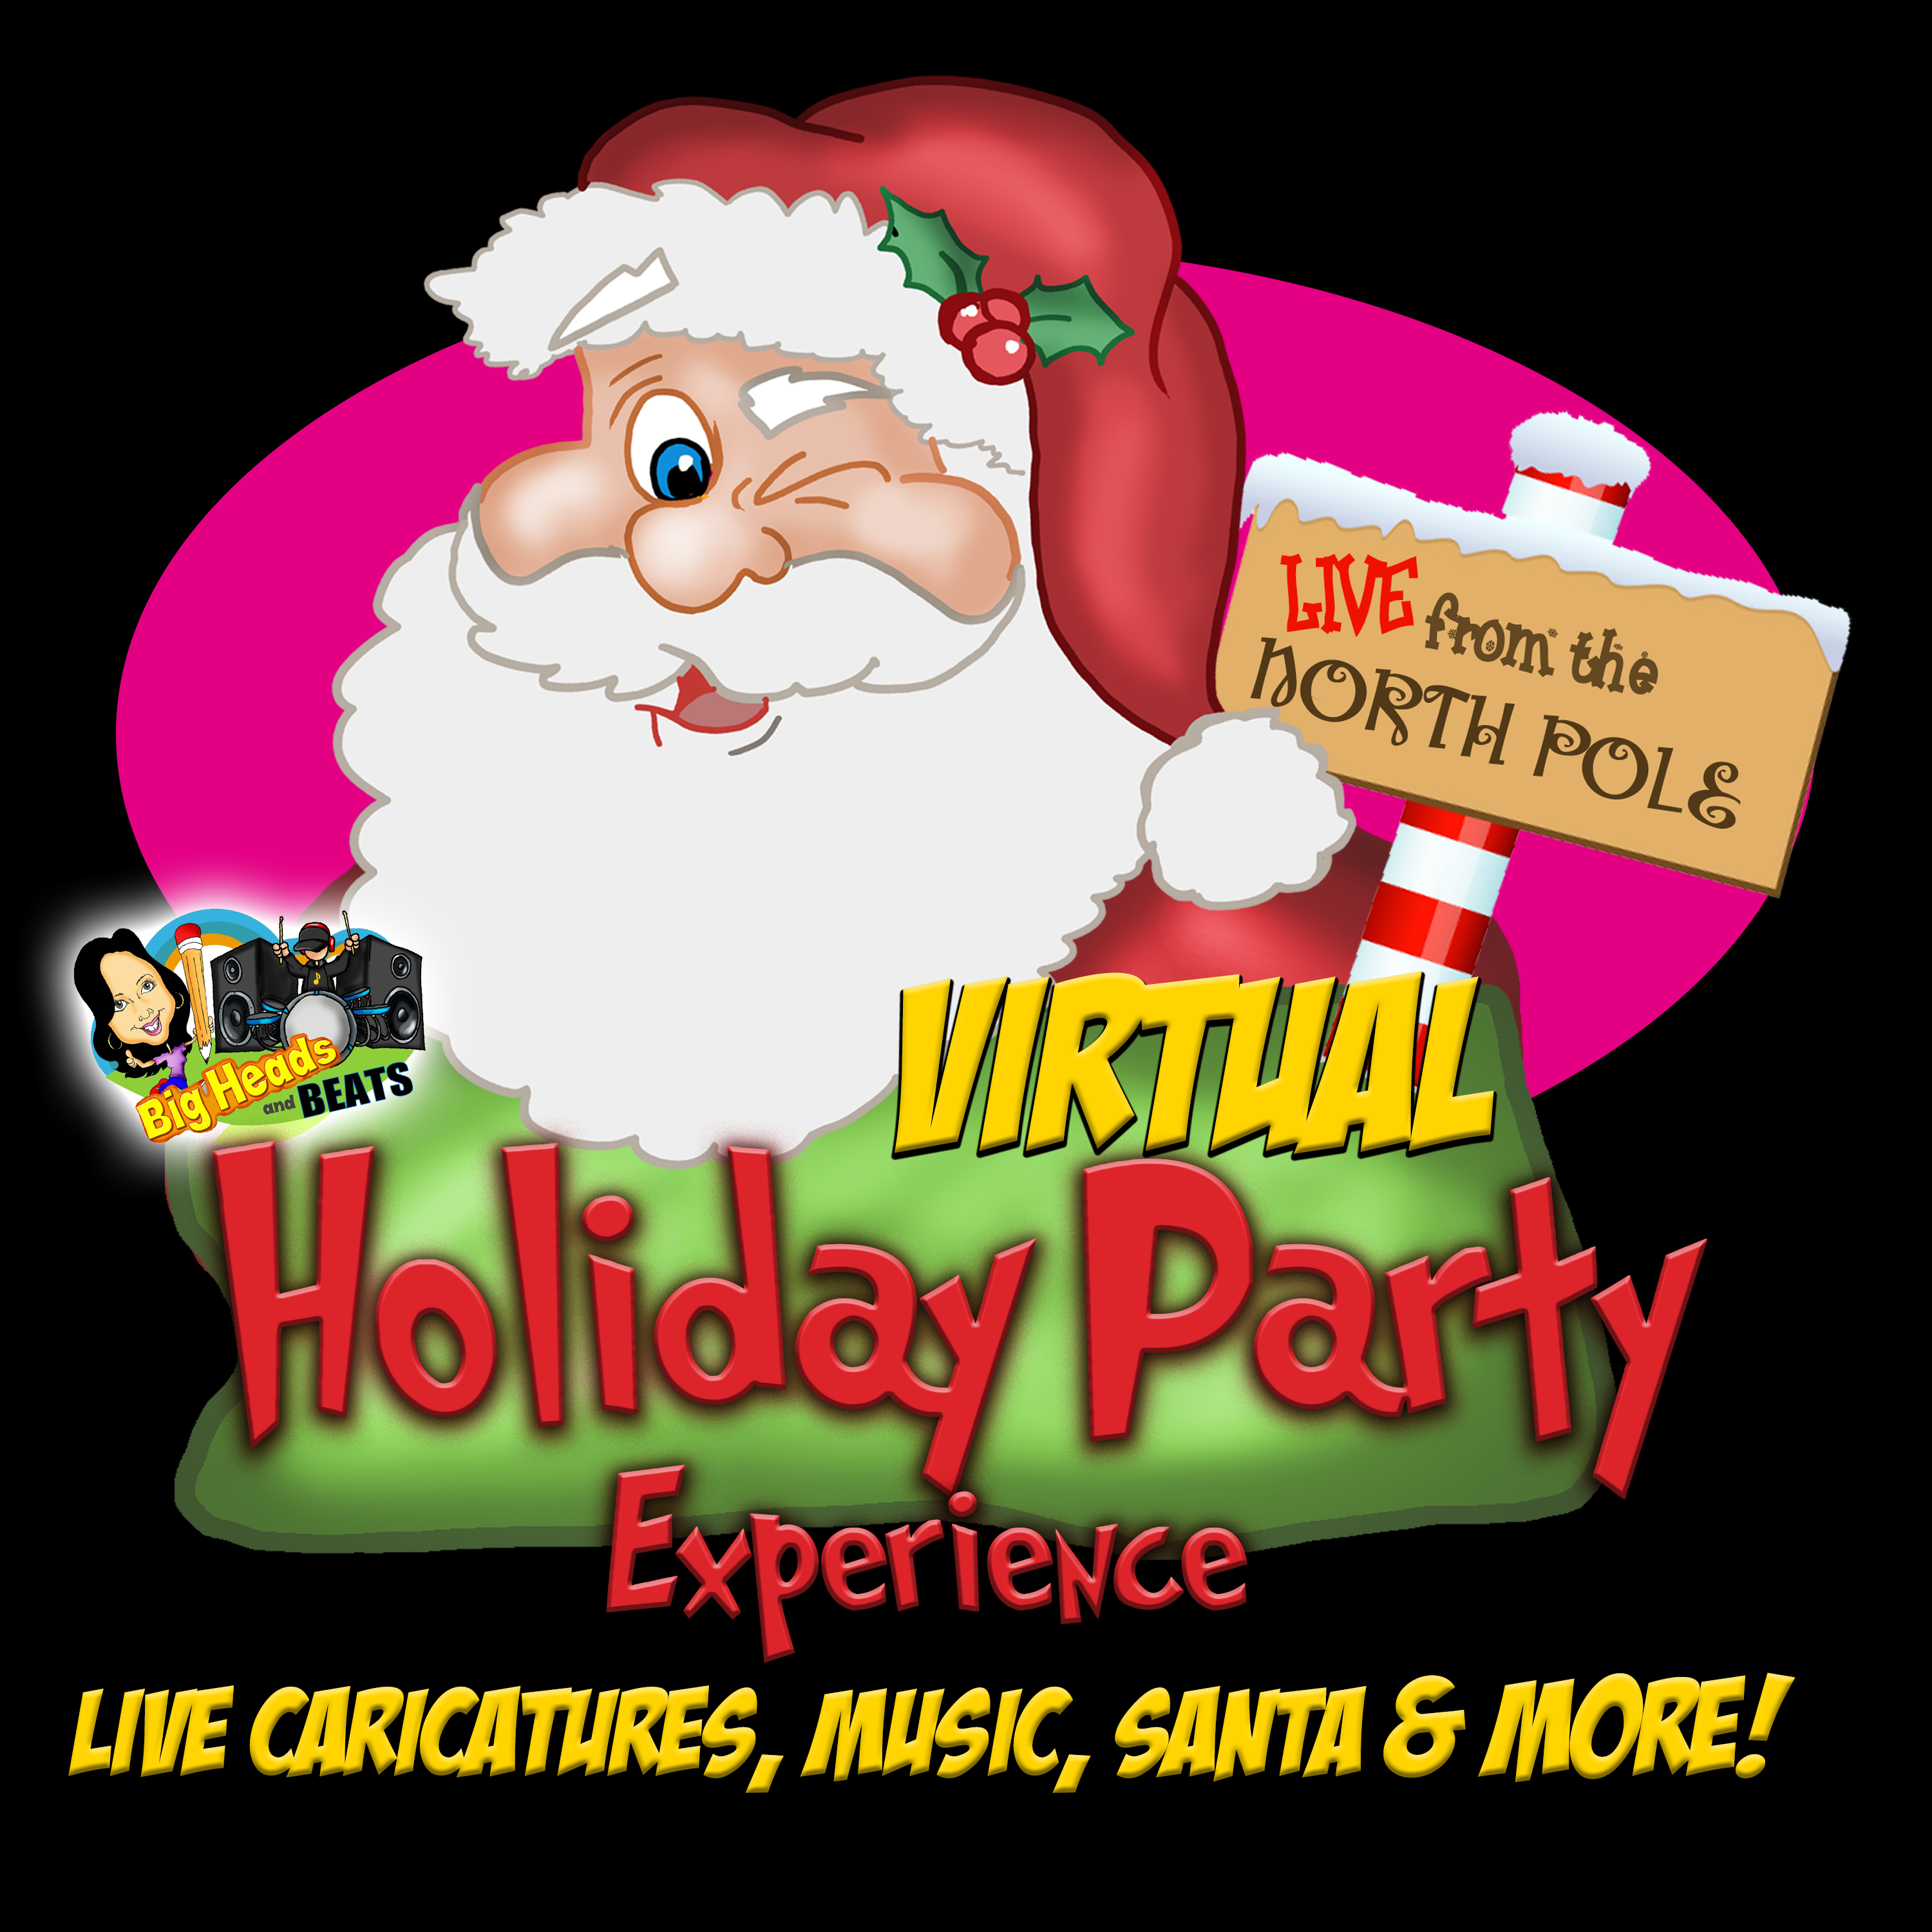 Zoom with Santa, Virtual Santa, Zoom Santa, Zoom Holiday Party, Skype with Santa, Virtual Holiday Party, Zoom Party Ideas